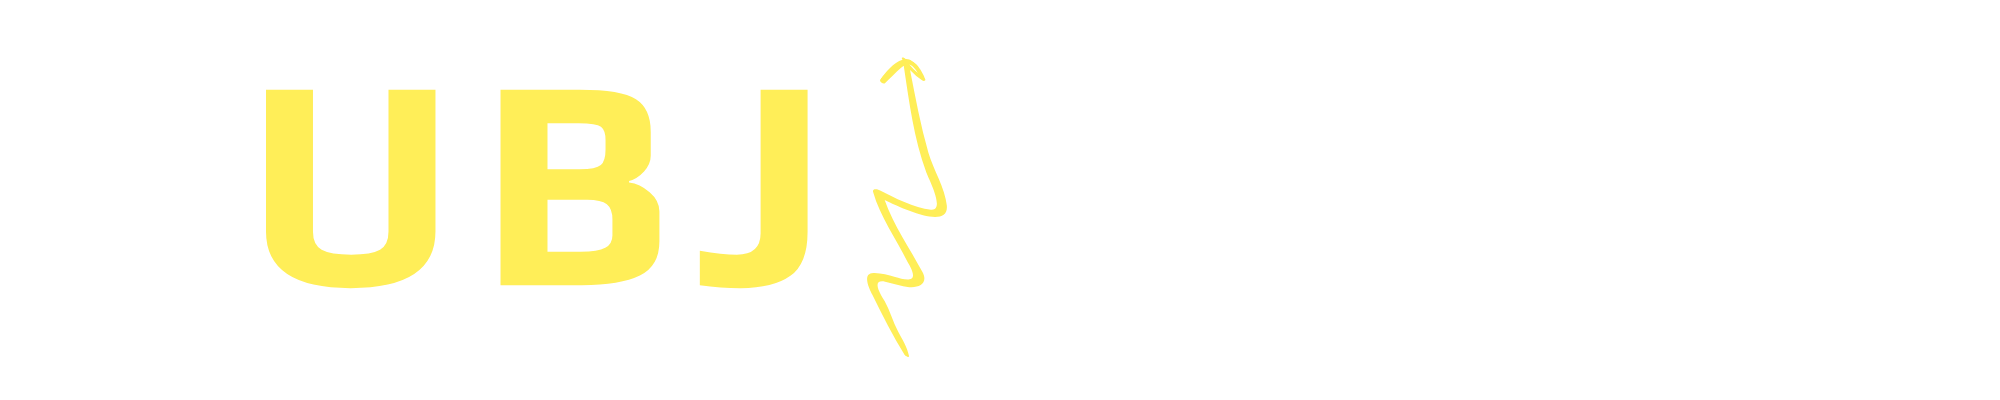 The UBJ - United Arab Emirates